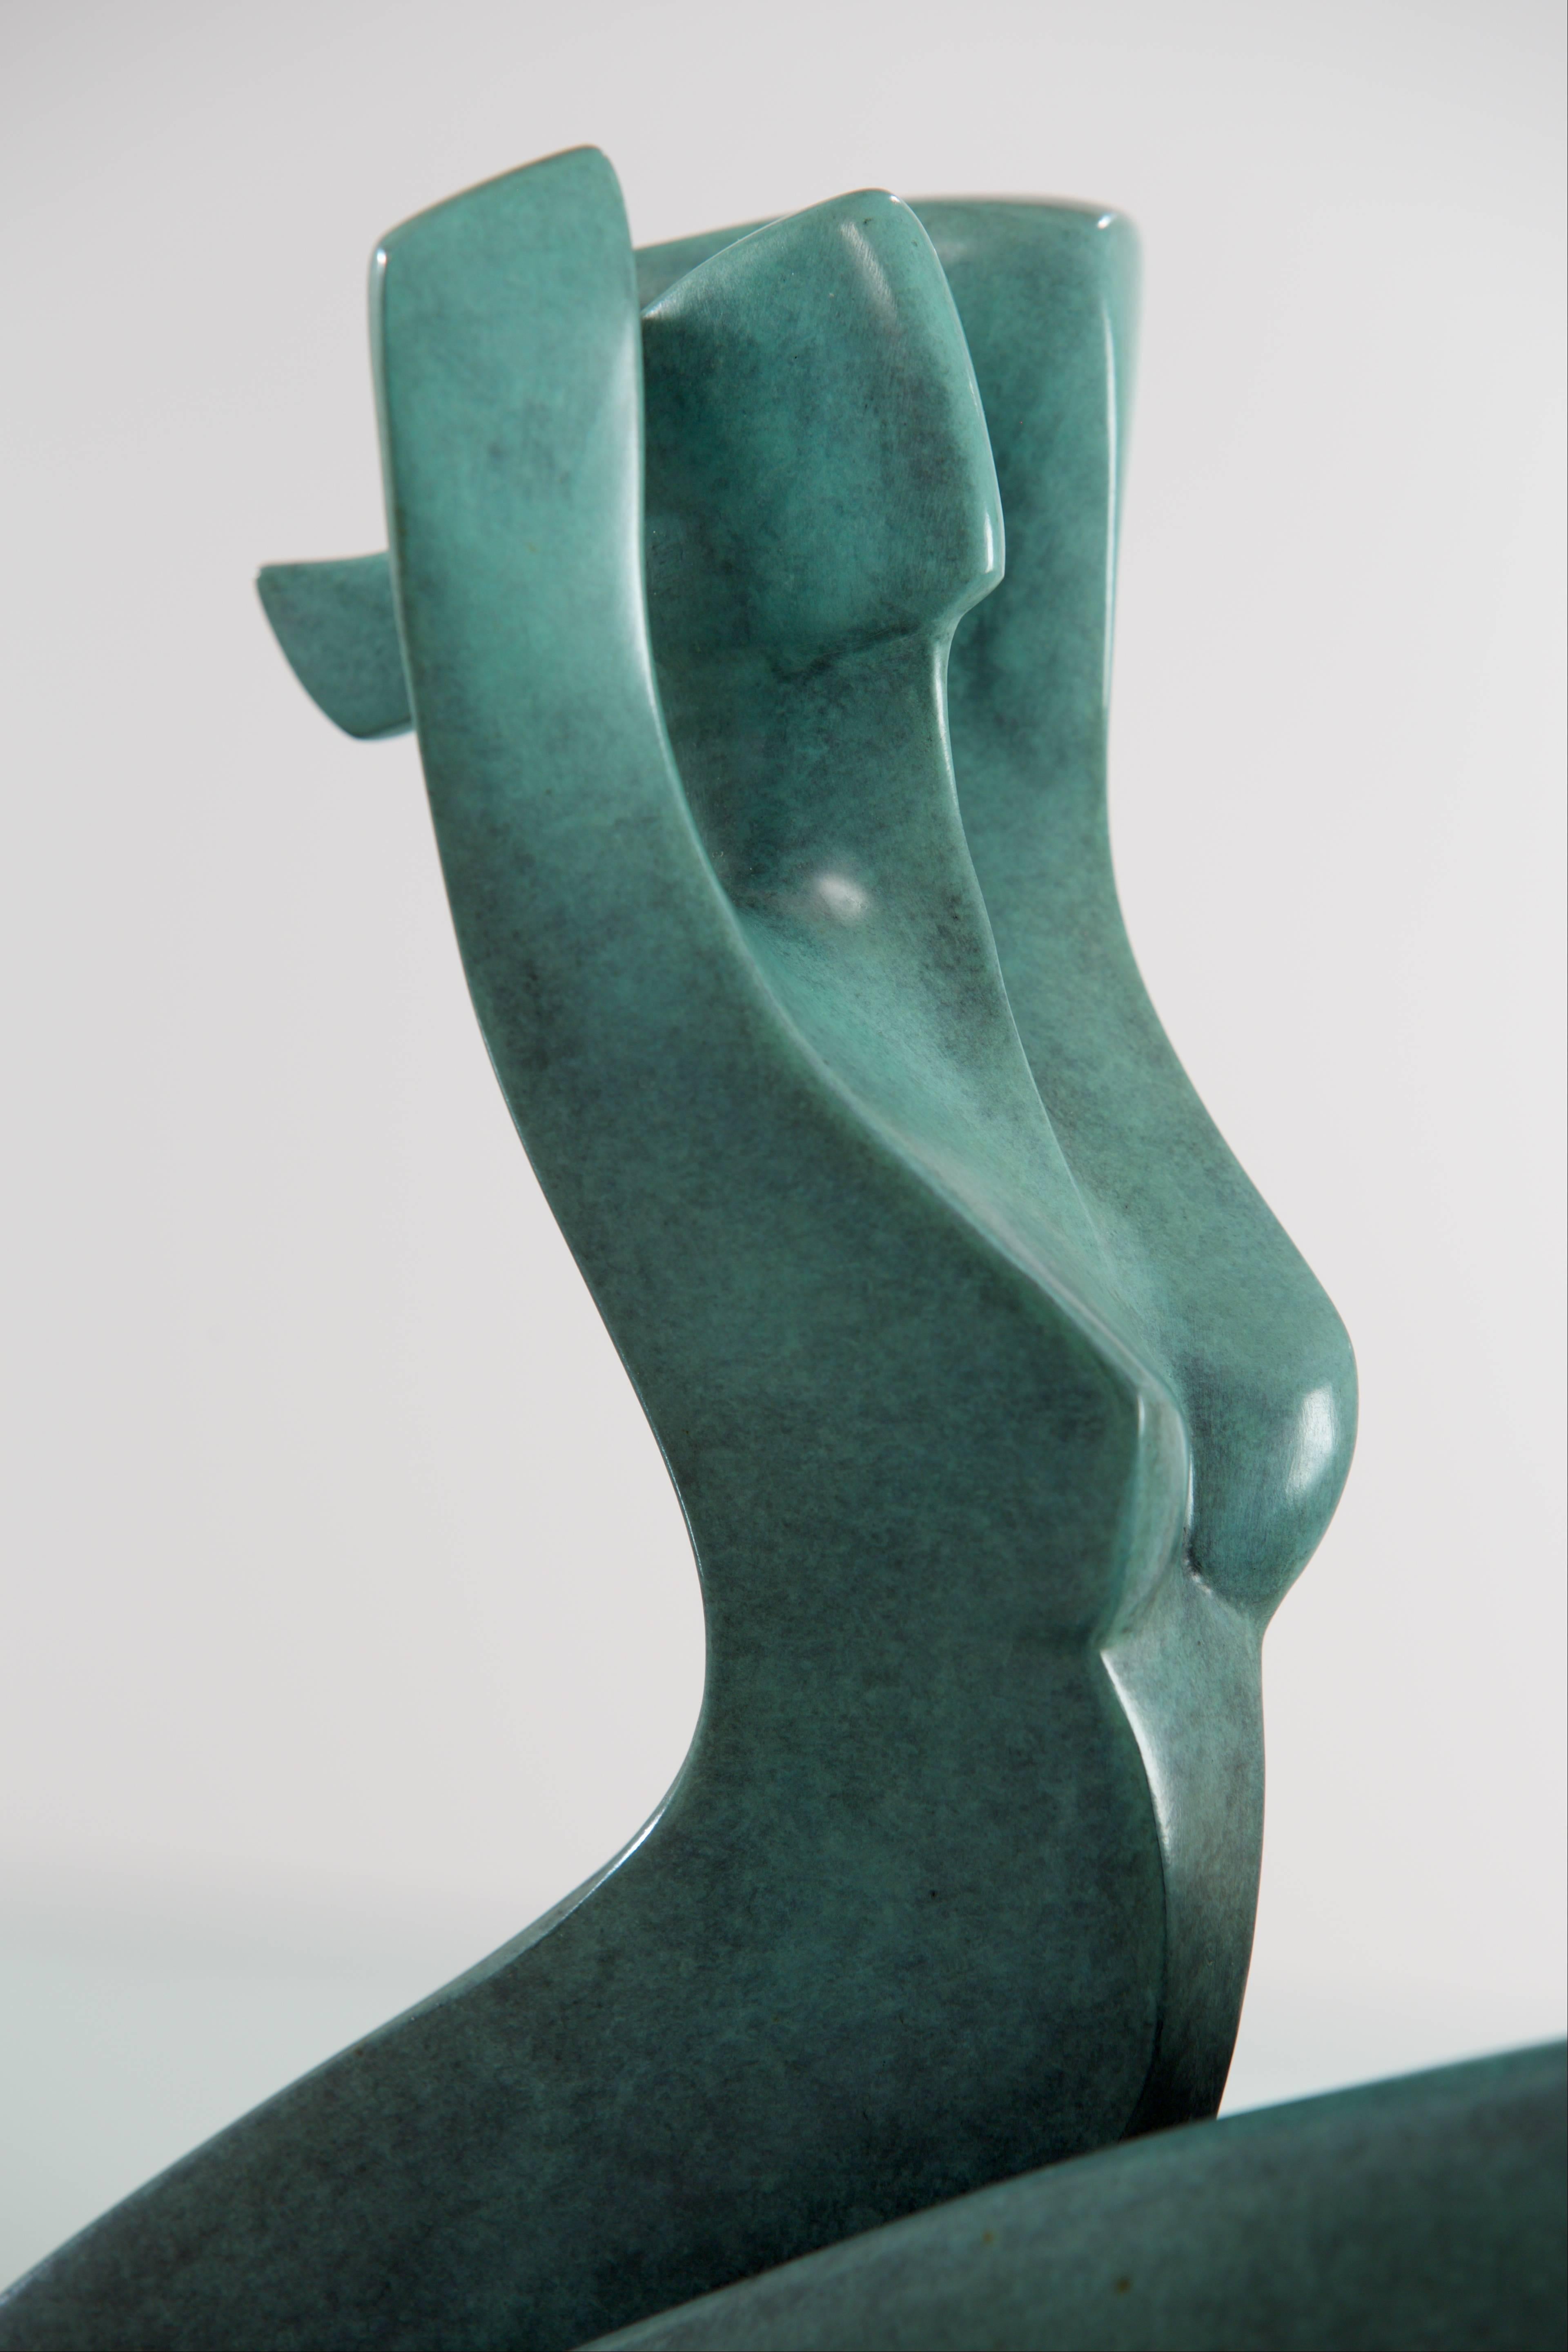 Diener aus Seidenholz – Sculpture von Annette Jalilova